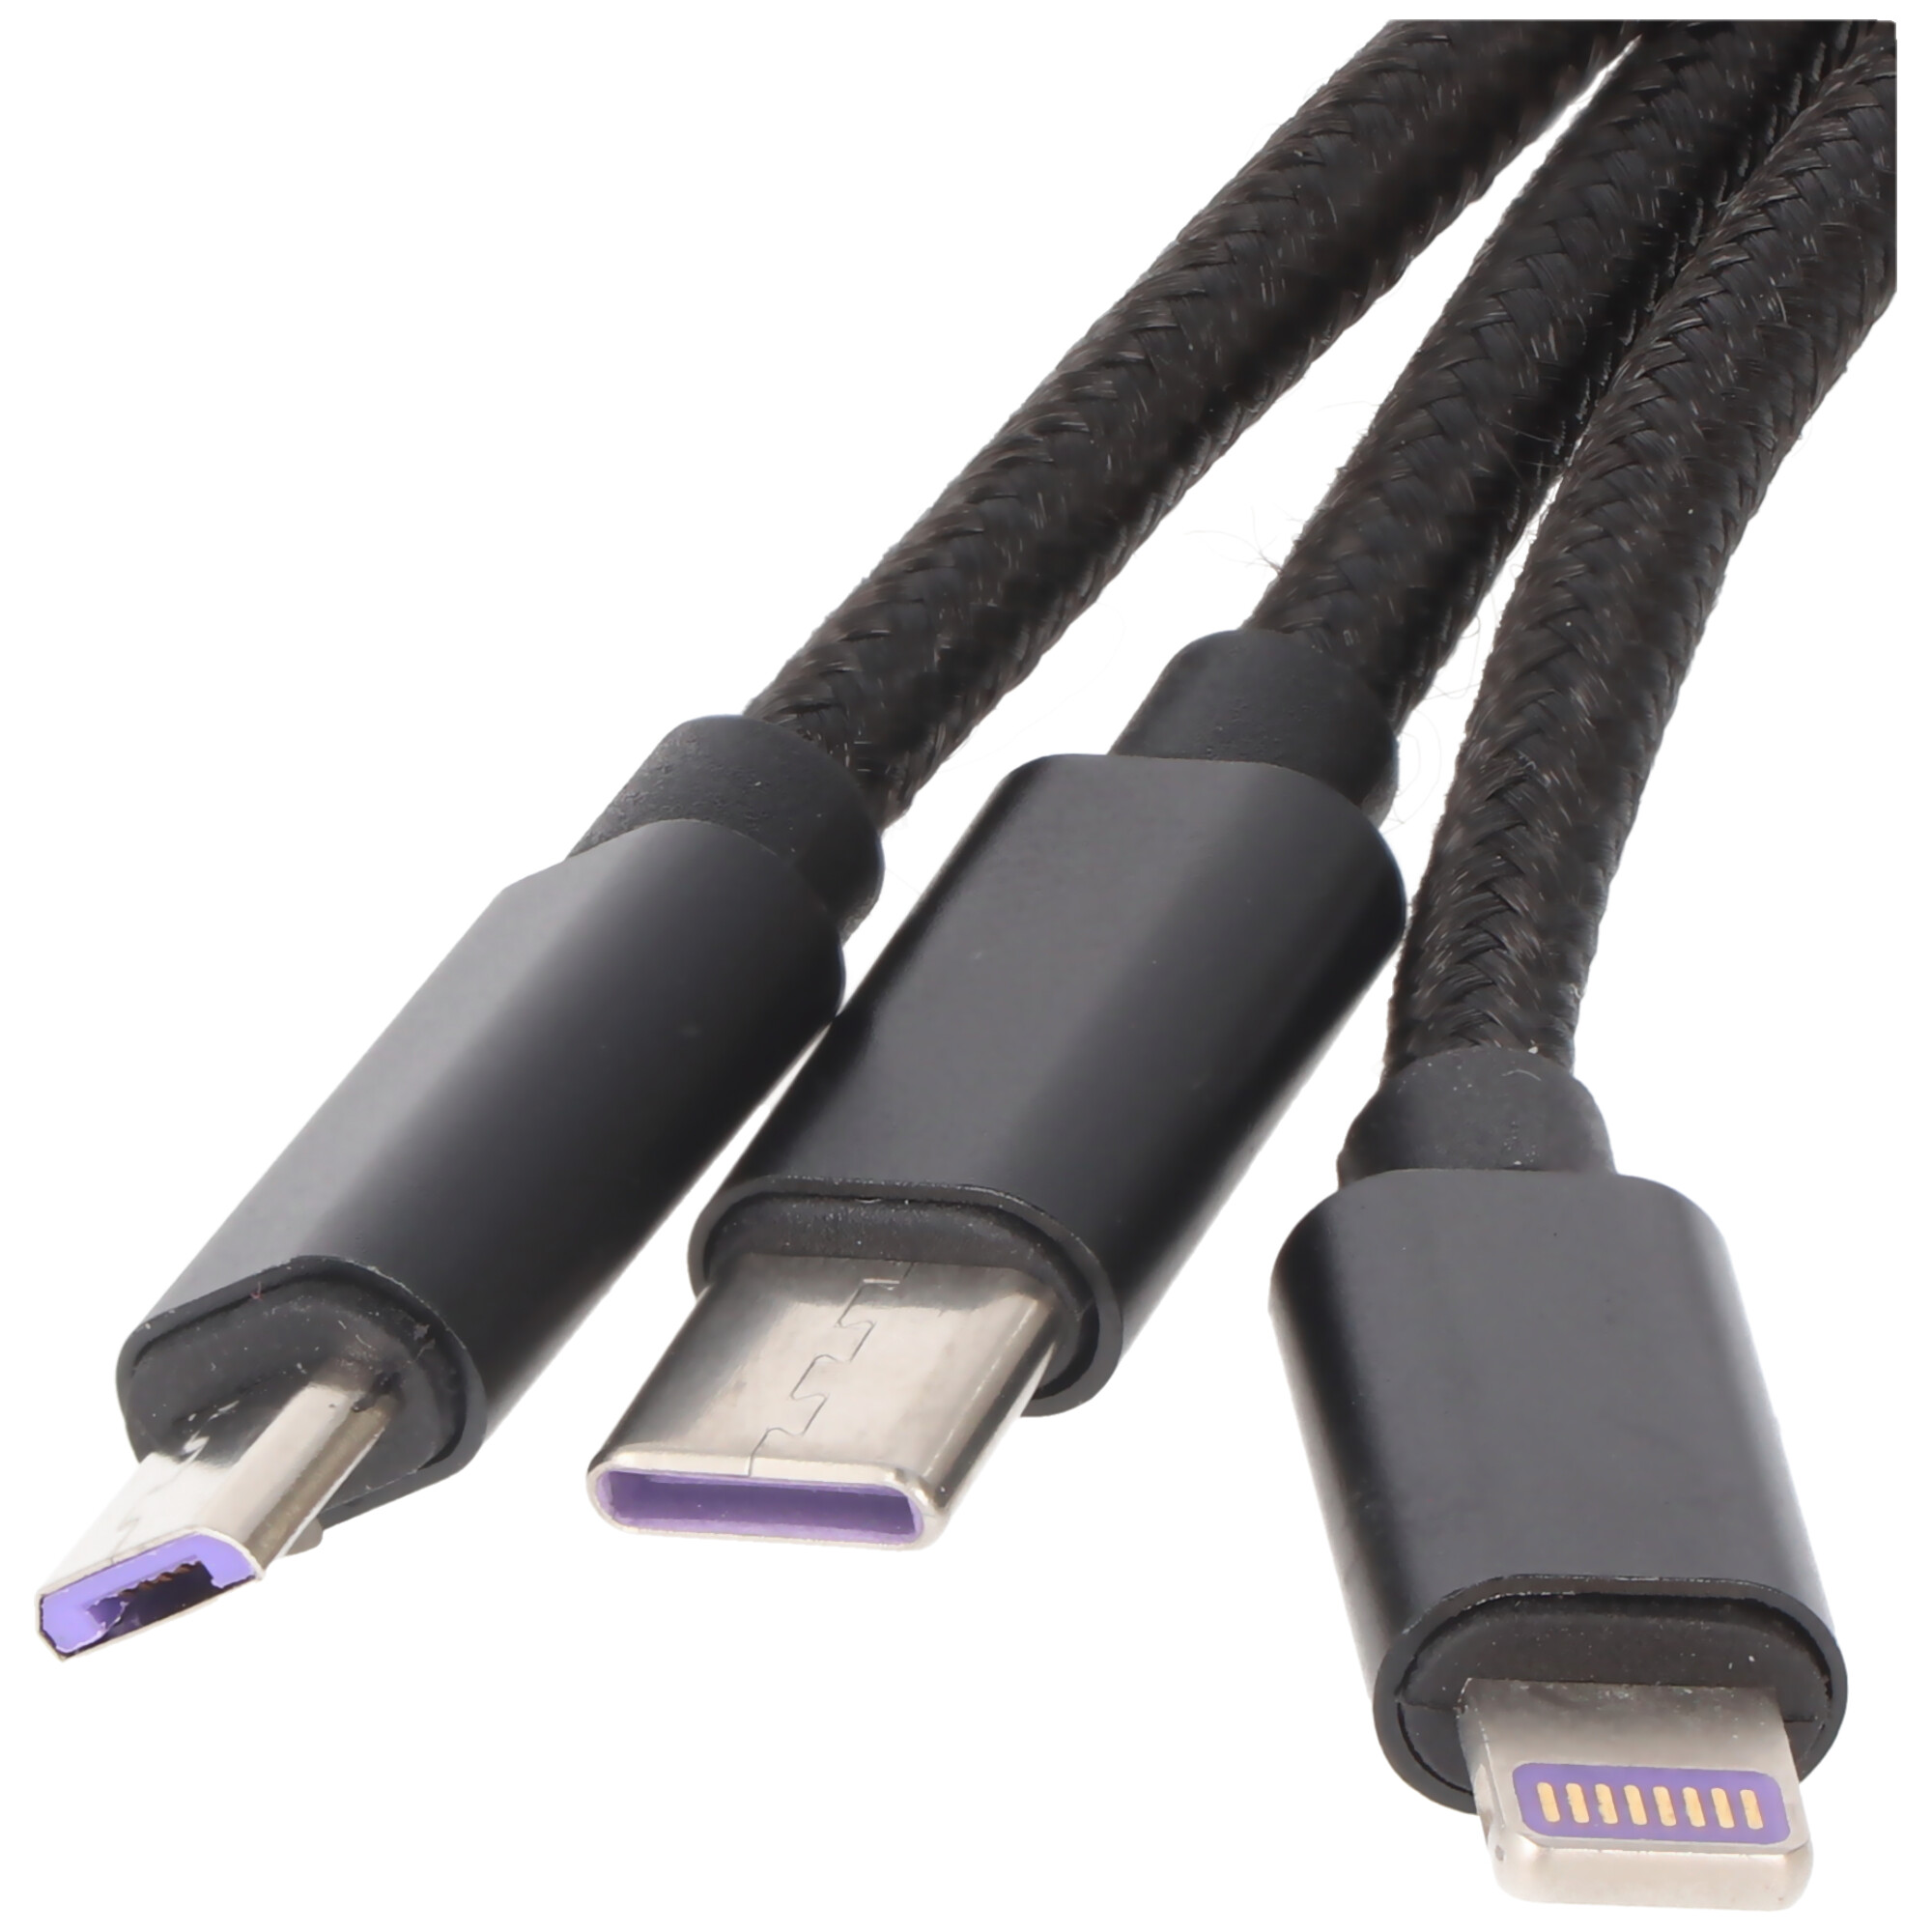 3IN1 USB Datenkabel passend für USB-C, iPhone, MICRO-USB Kabel 1 Meter SCHWARZ